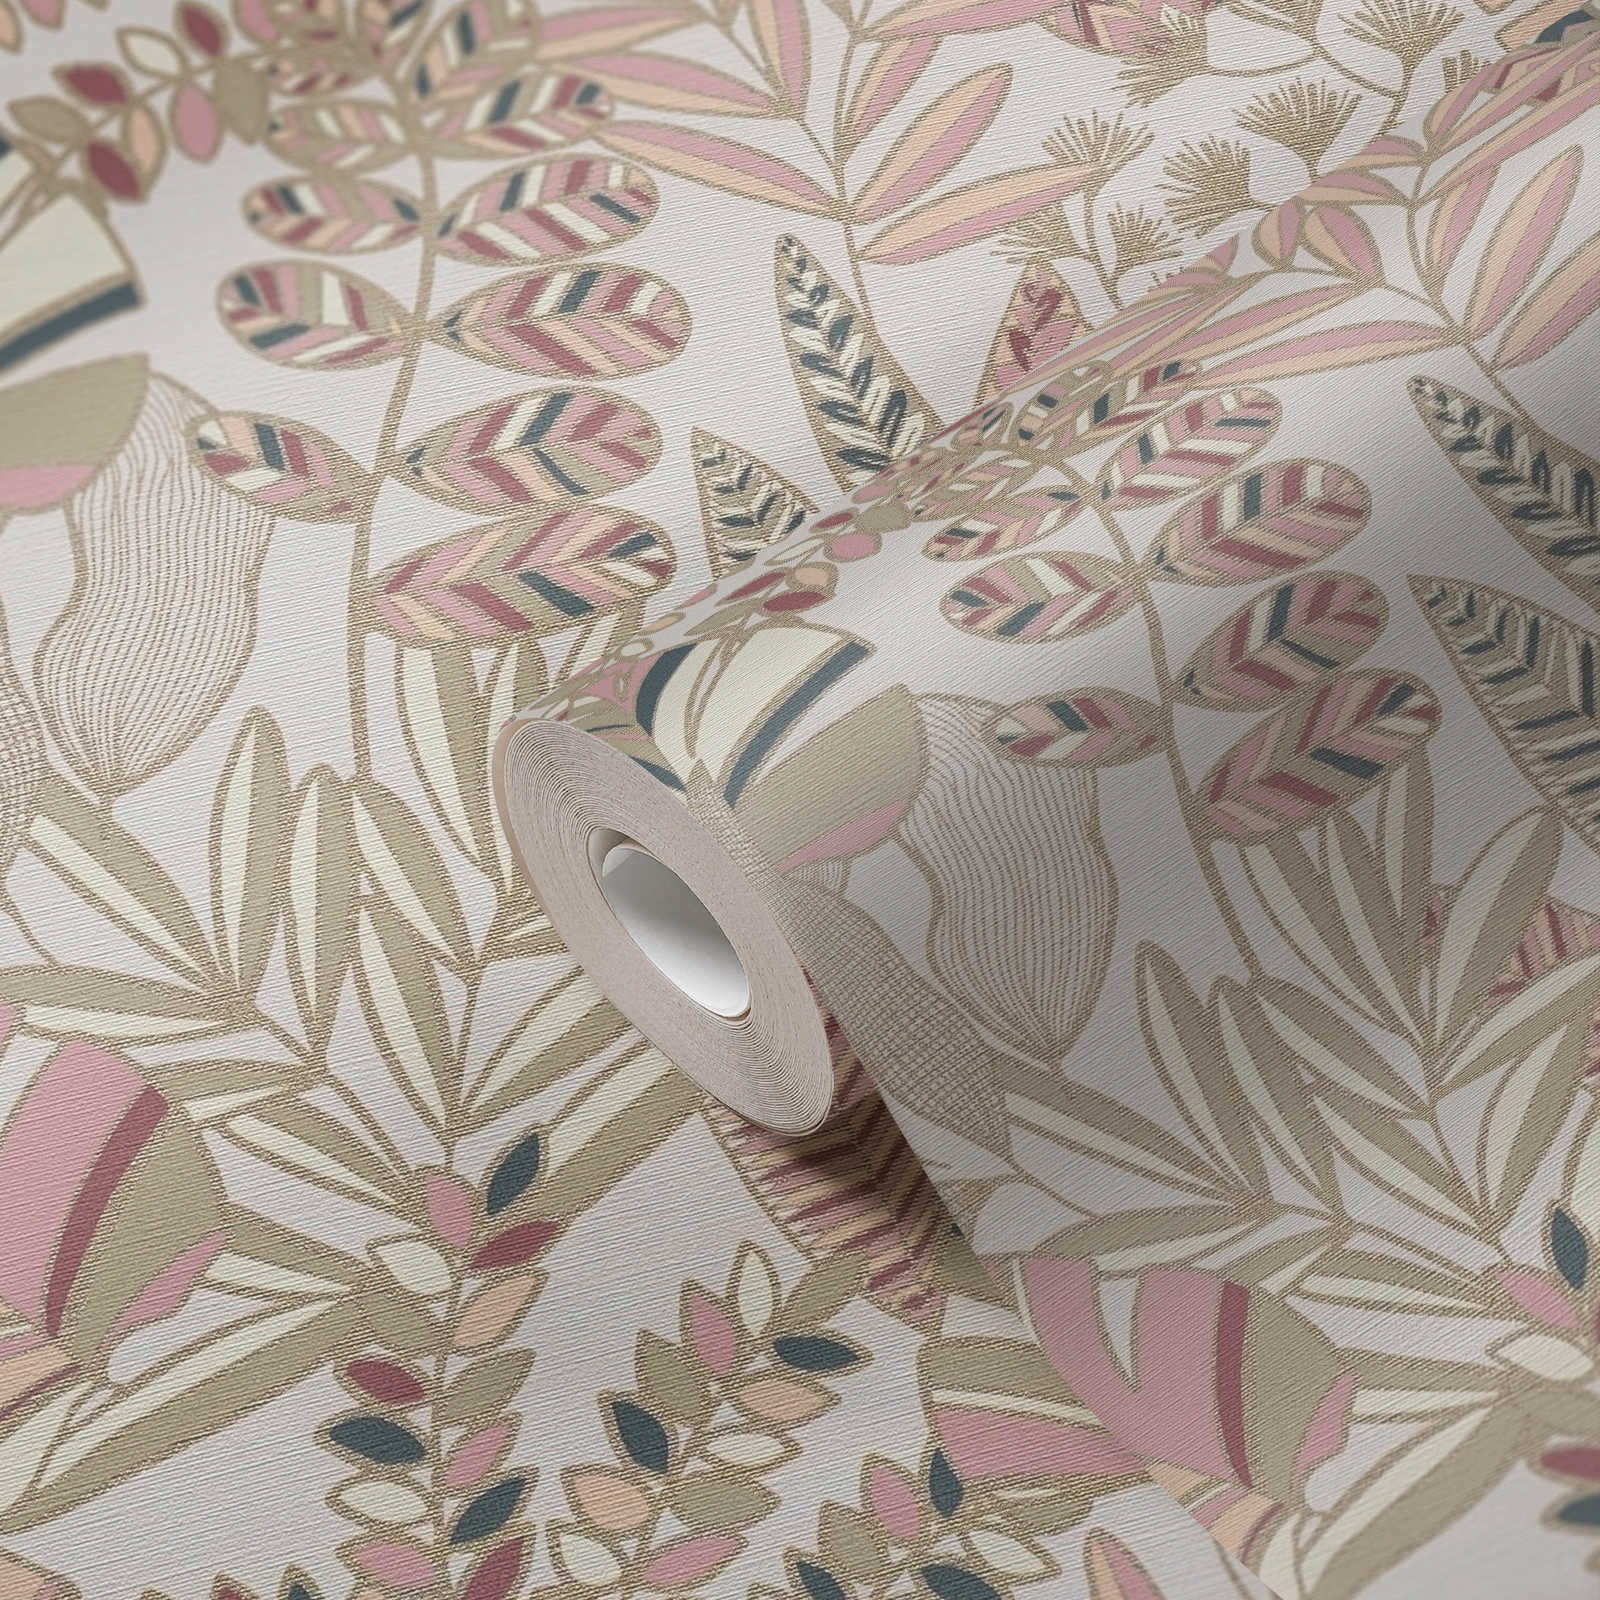             Vliestapete mit großen Blättern in leichtem Glanz – Rosa, Weiß, Gold
        